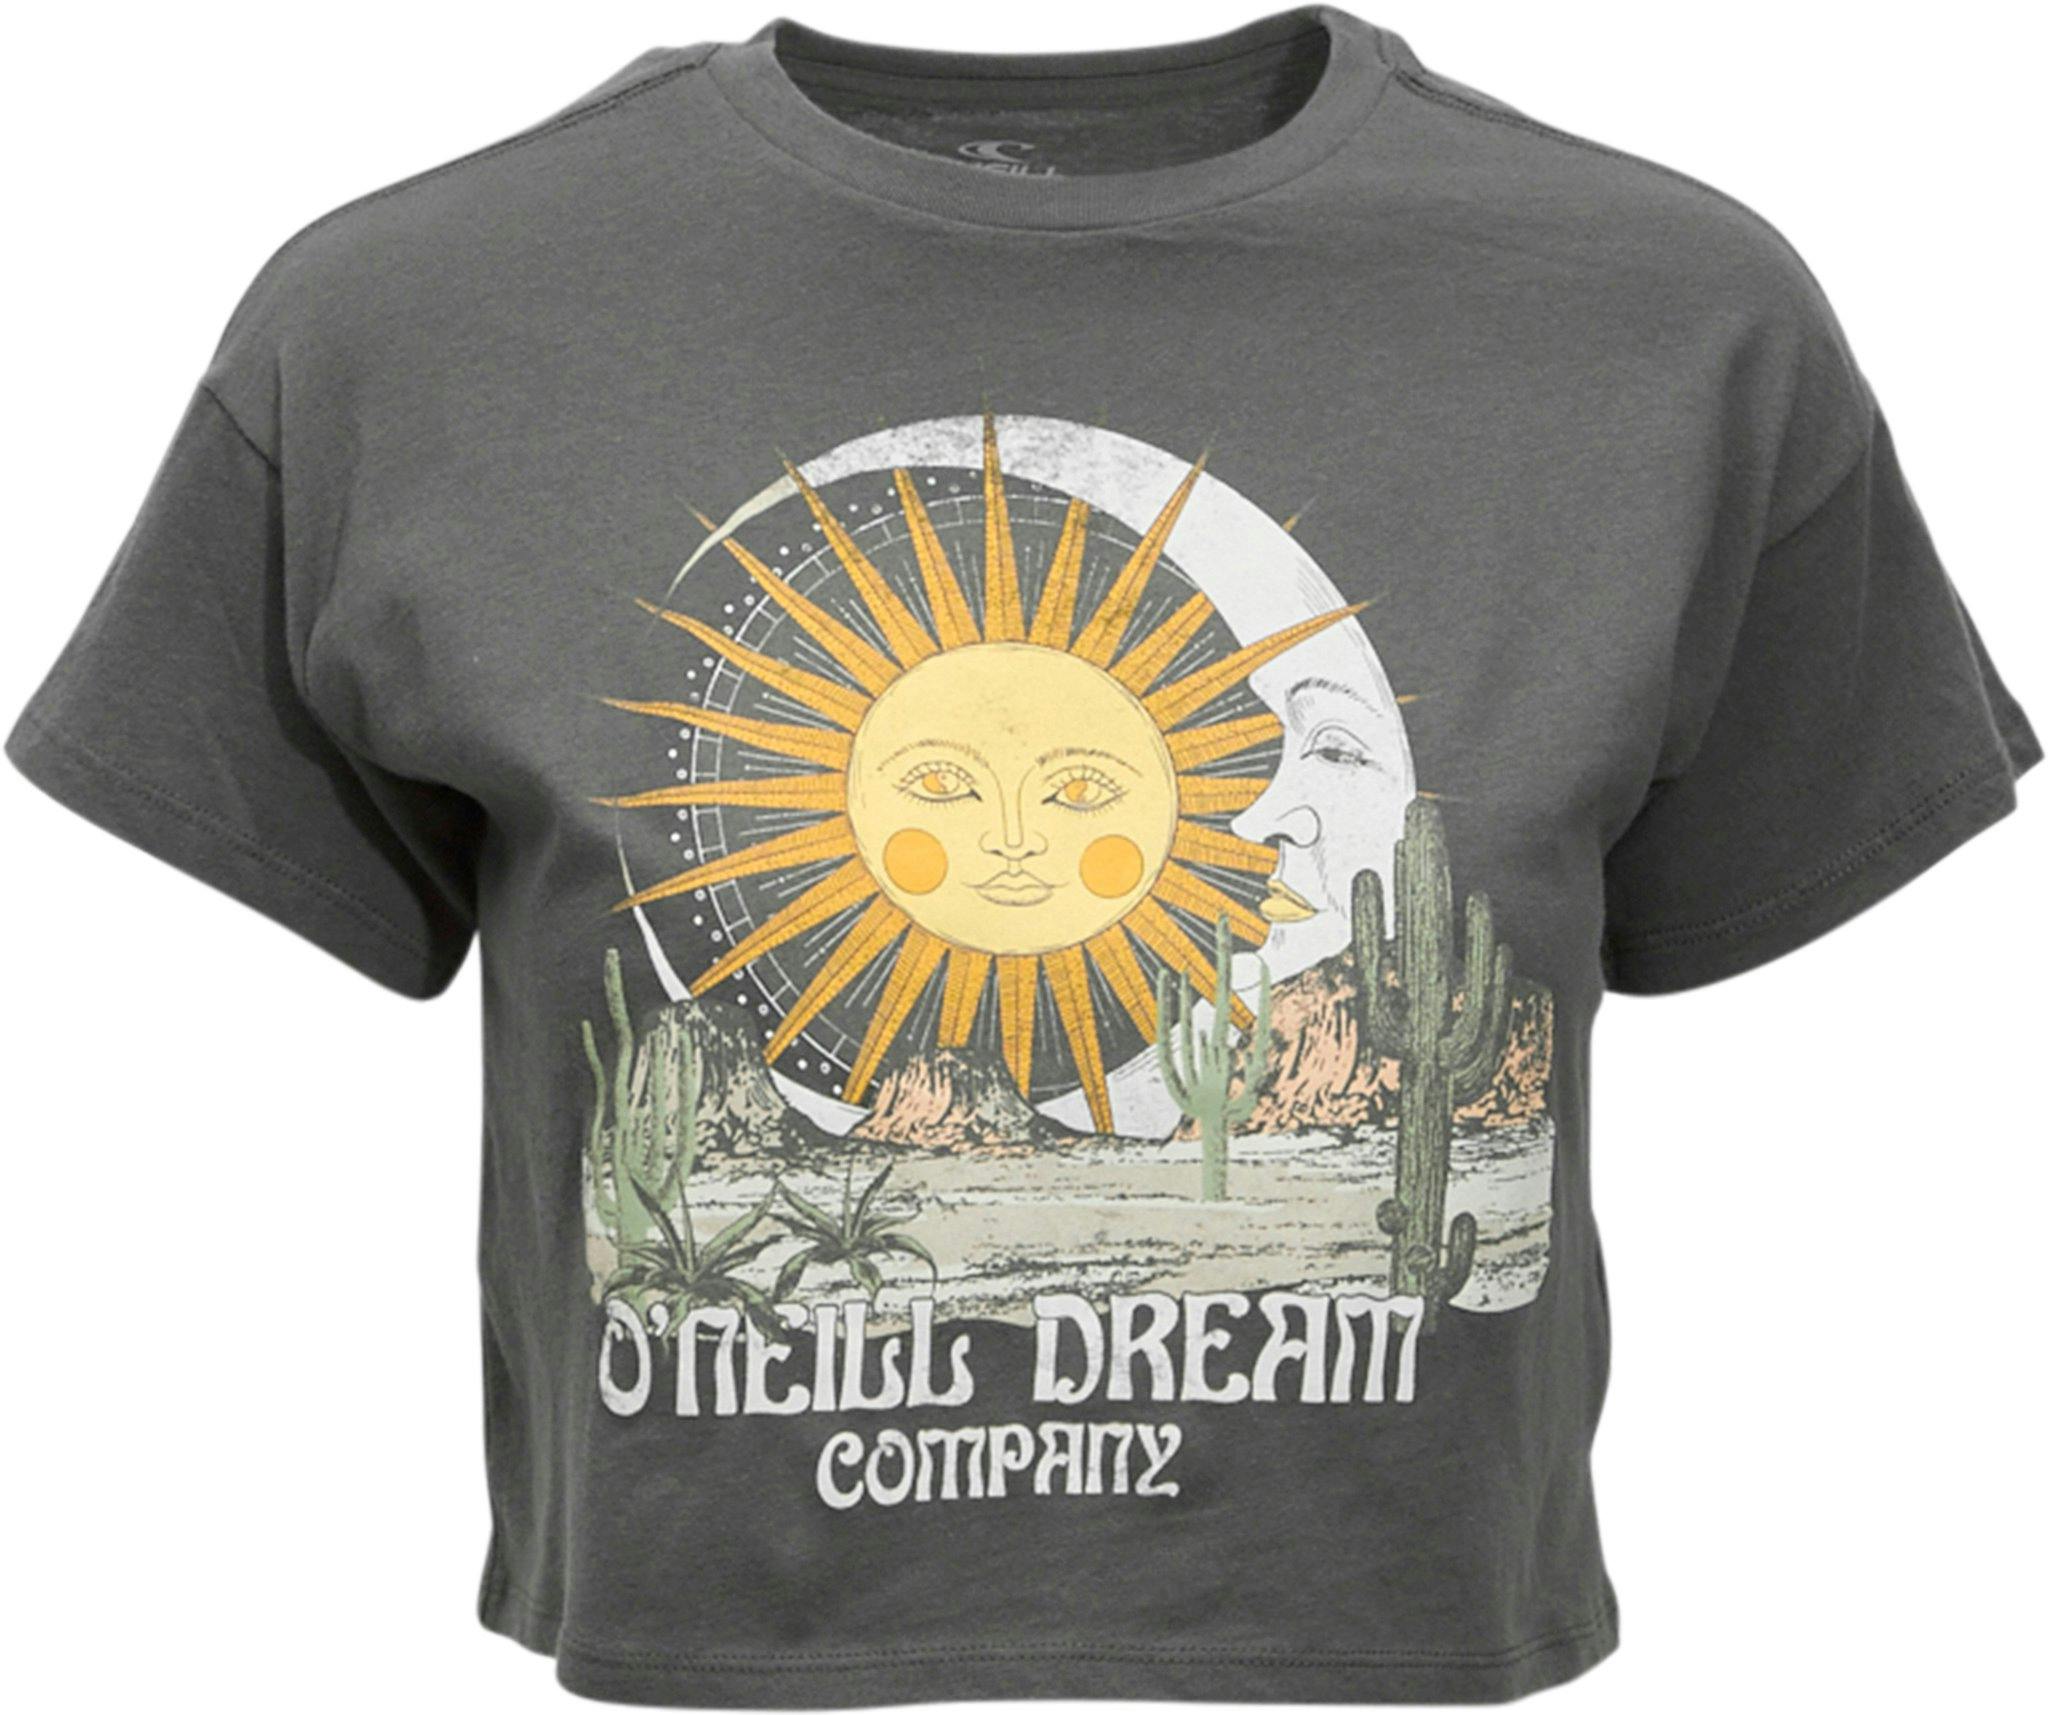 Image de produit pour T-shirt Desert Dream - Fille